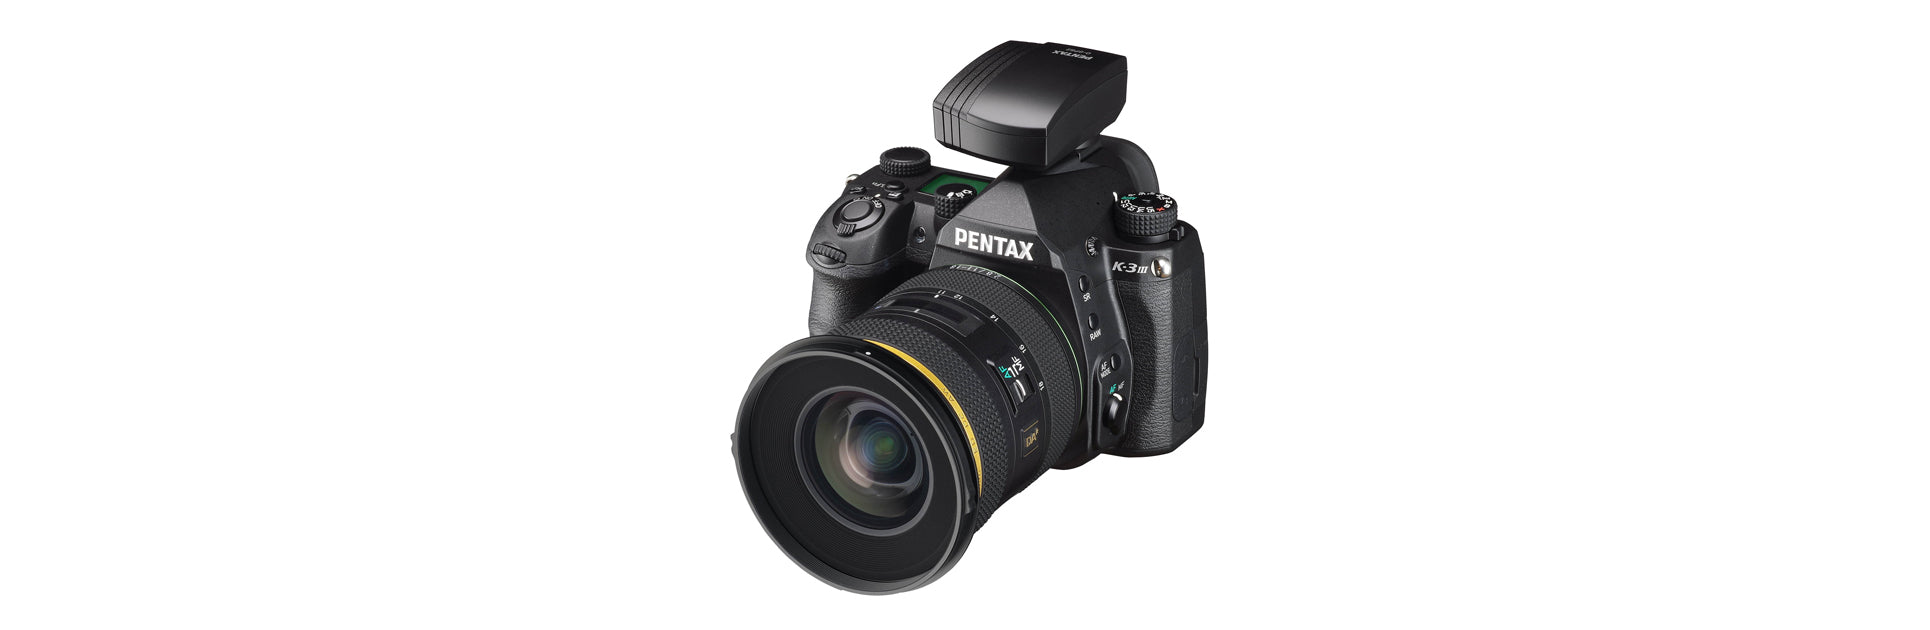 Perseus stroom Voor type PENTAX O-GPS2 - GPS-toestel voor PENTAX camera's - PENTAX - Officiële winkel